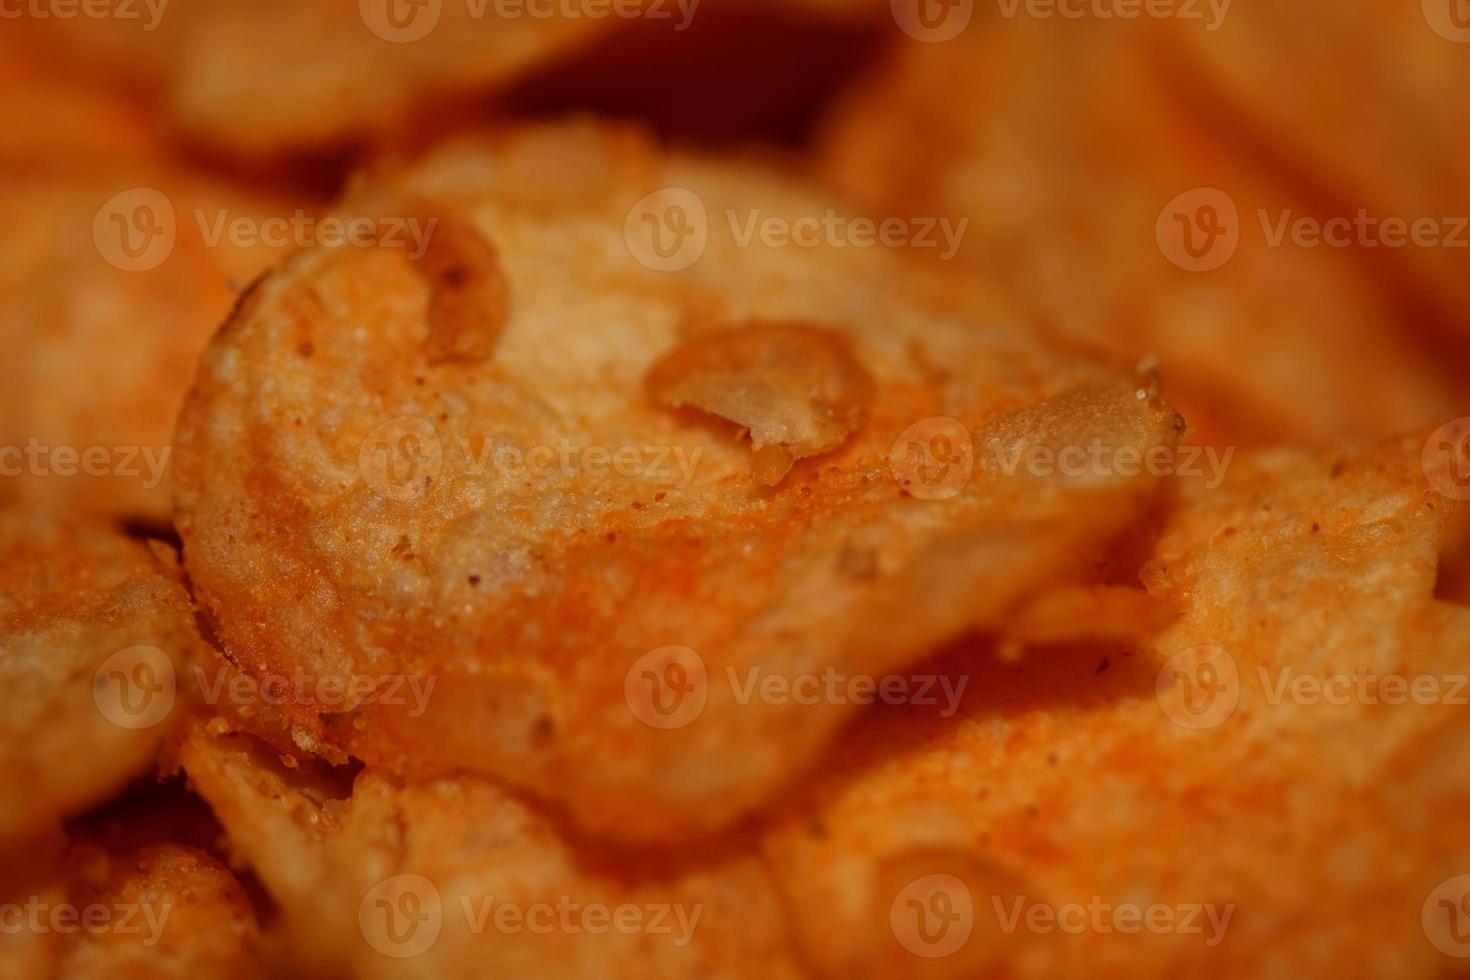 topp se av potatis pommes frites med paprika krydda snabb mat begrepp äter skräp mat bakgrund hög kvalitet stor storlek omedelbar grafik stock fotografi foto